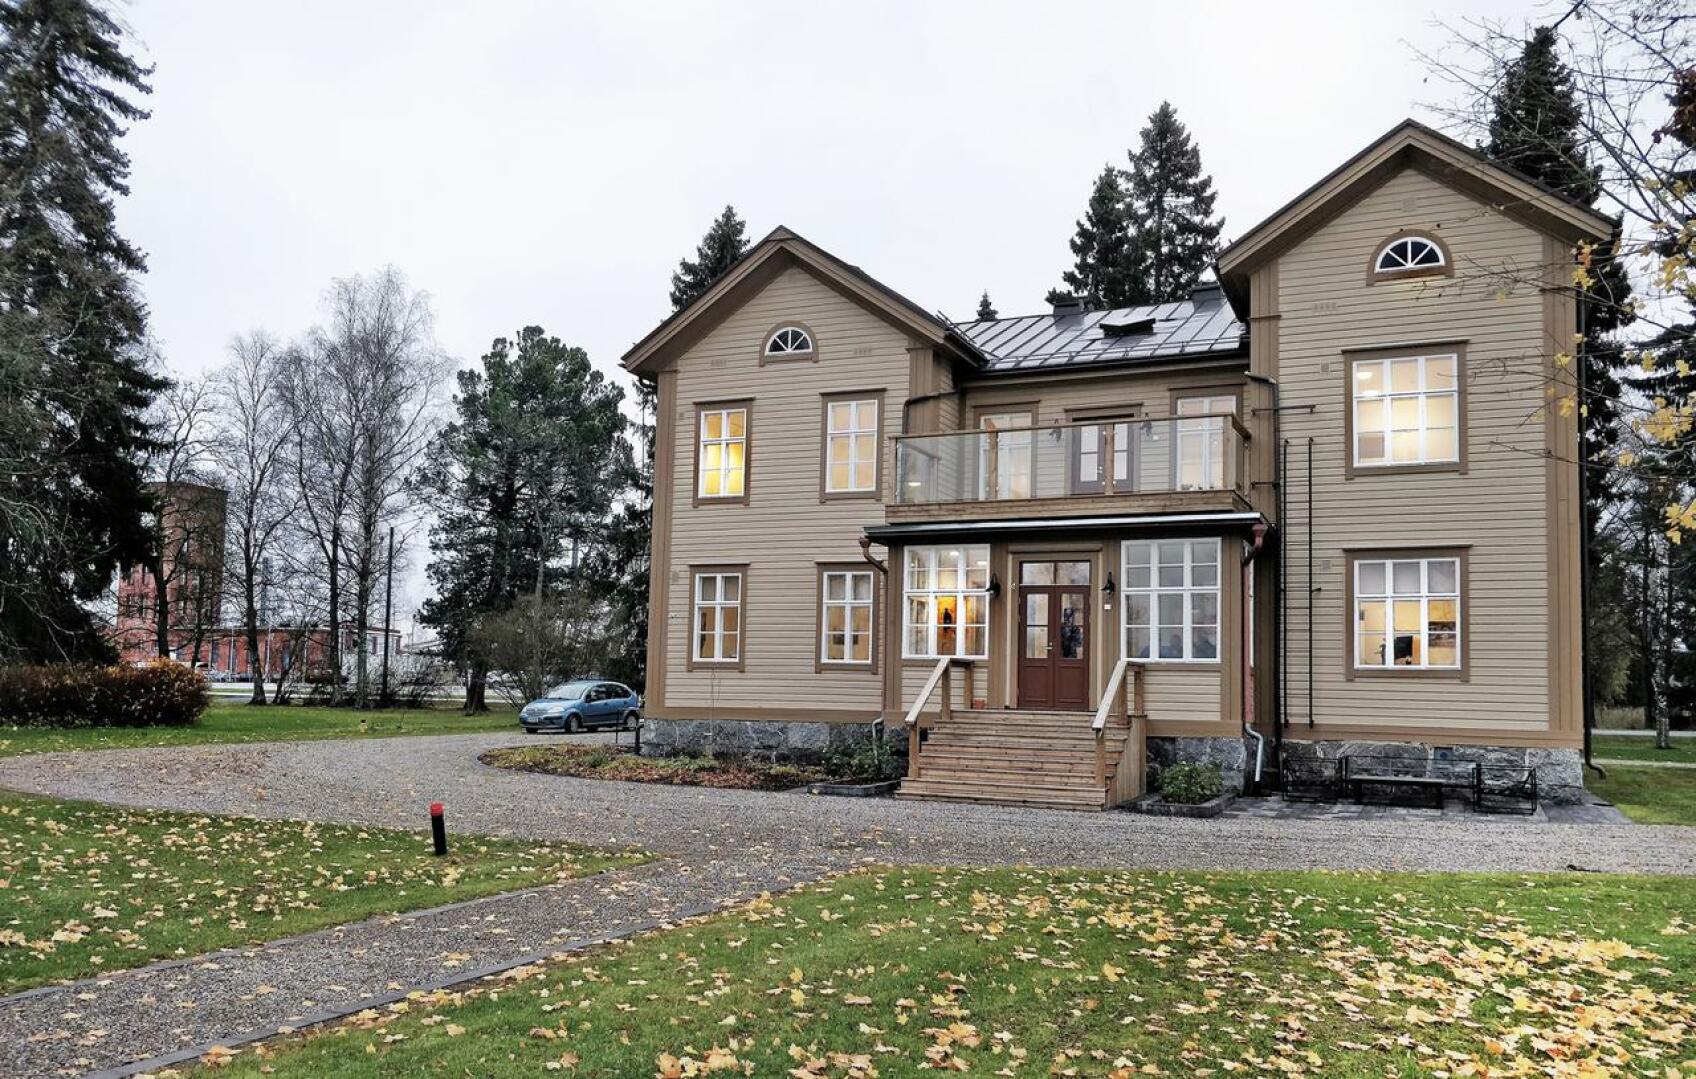 Thódenin huvilan rakennutti Carl Johan Thóden vuonna 1869 ja nimesi sen Villa Rauhalaksi.  Huvila siirtyi vuonna 1878 Otto A. Malmin omistukseen ja vuonna 1900 Wilhelm Schaumanille. Kuva takapihalta. 